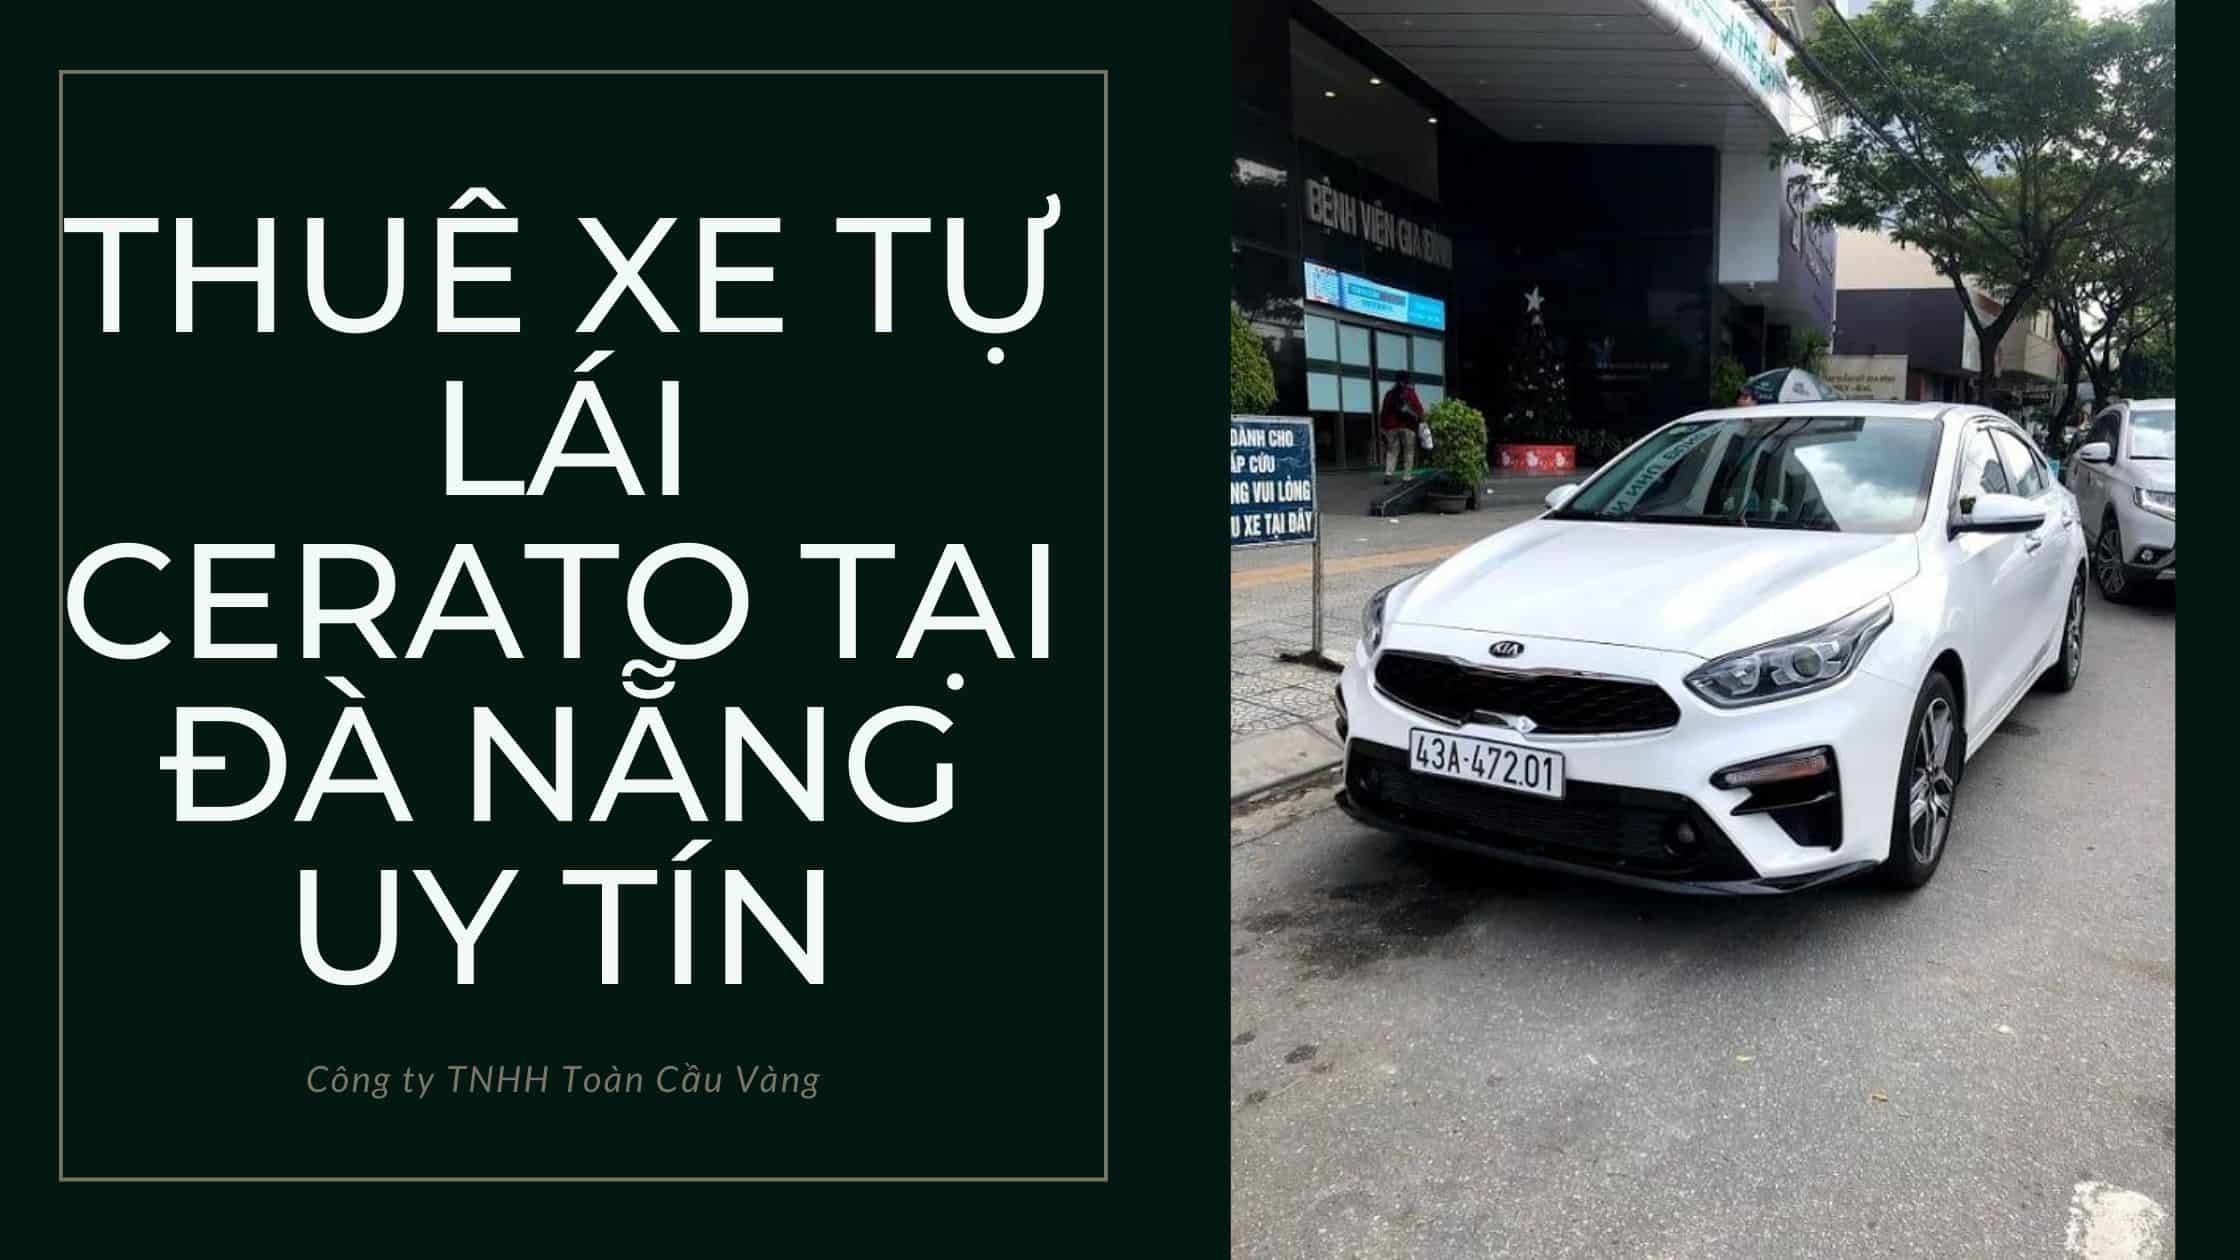 Thuê xe tự lái Cerato Đà Nẵng giá bao nhiêu?